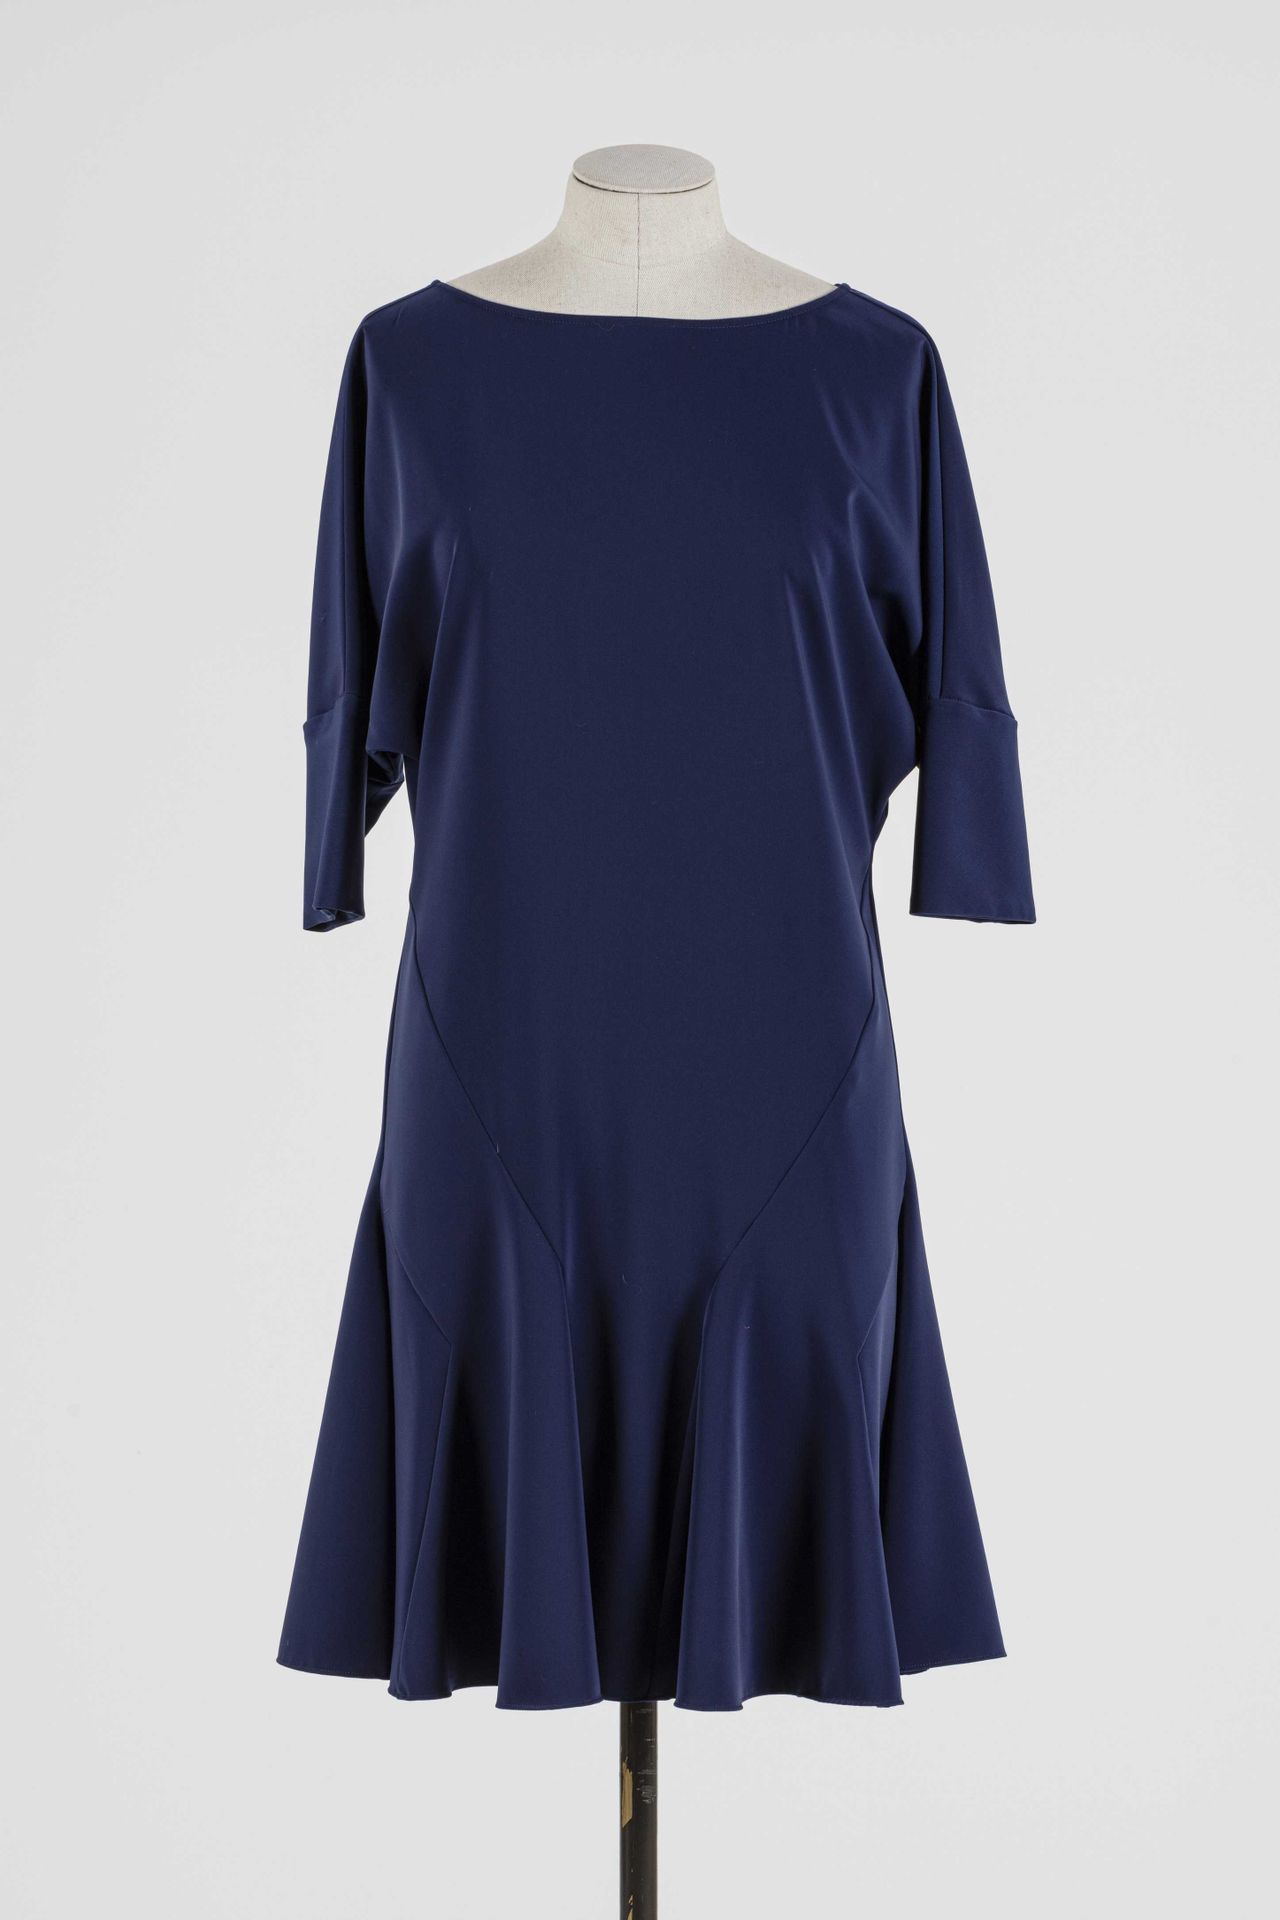 Null VERSACE: vestido azul de poliéster de manga corta.

T. 36